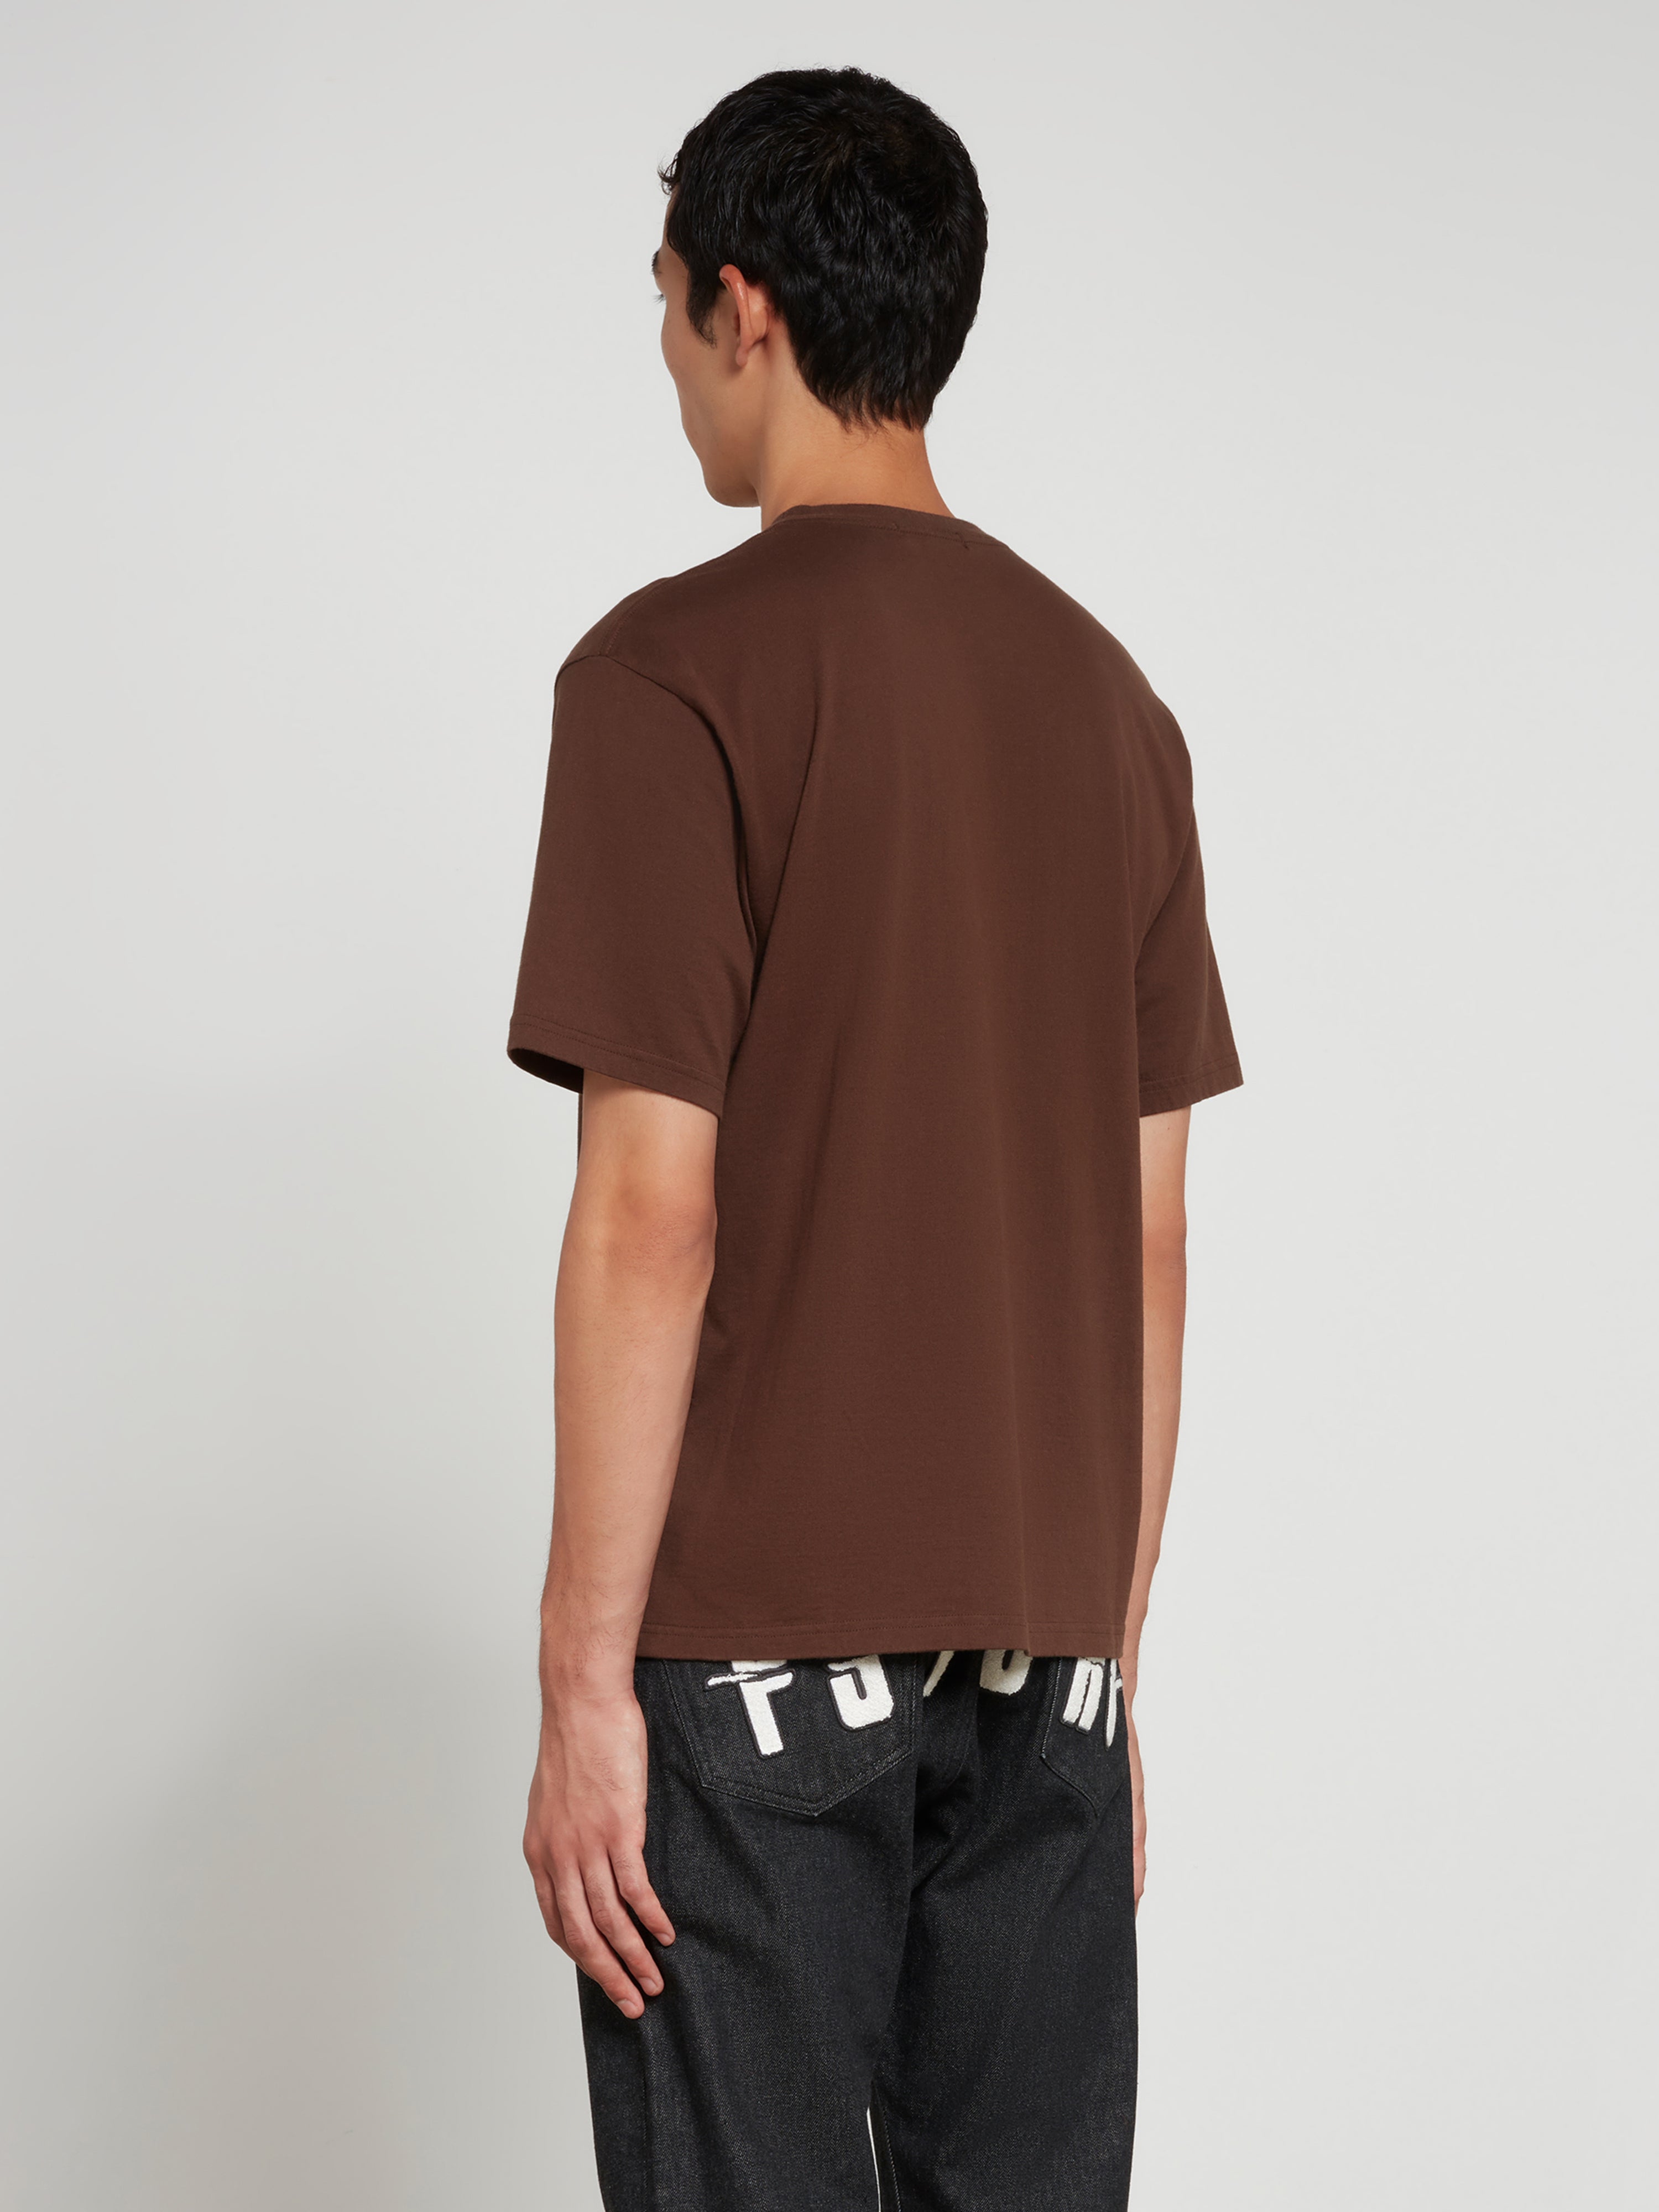 Undercover - Men’s Window T-Shirt - (Brown)